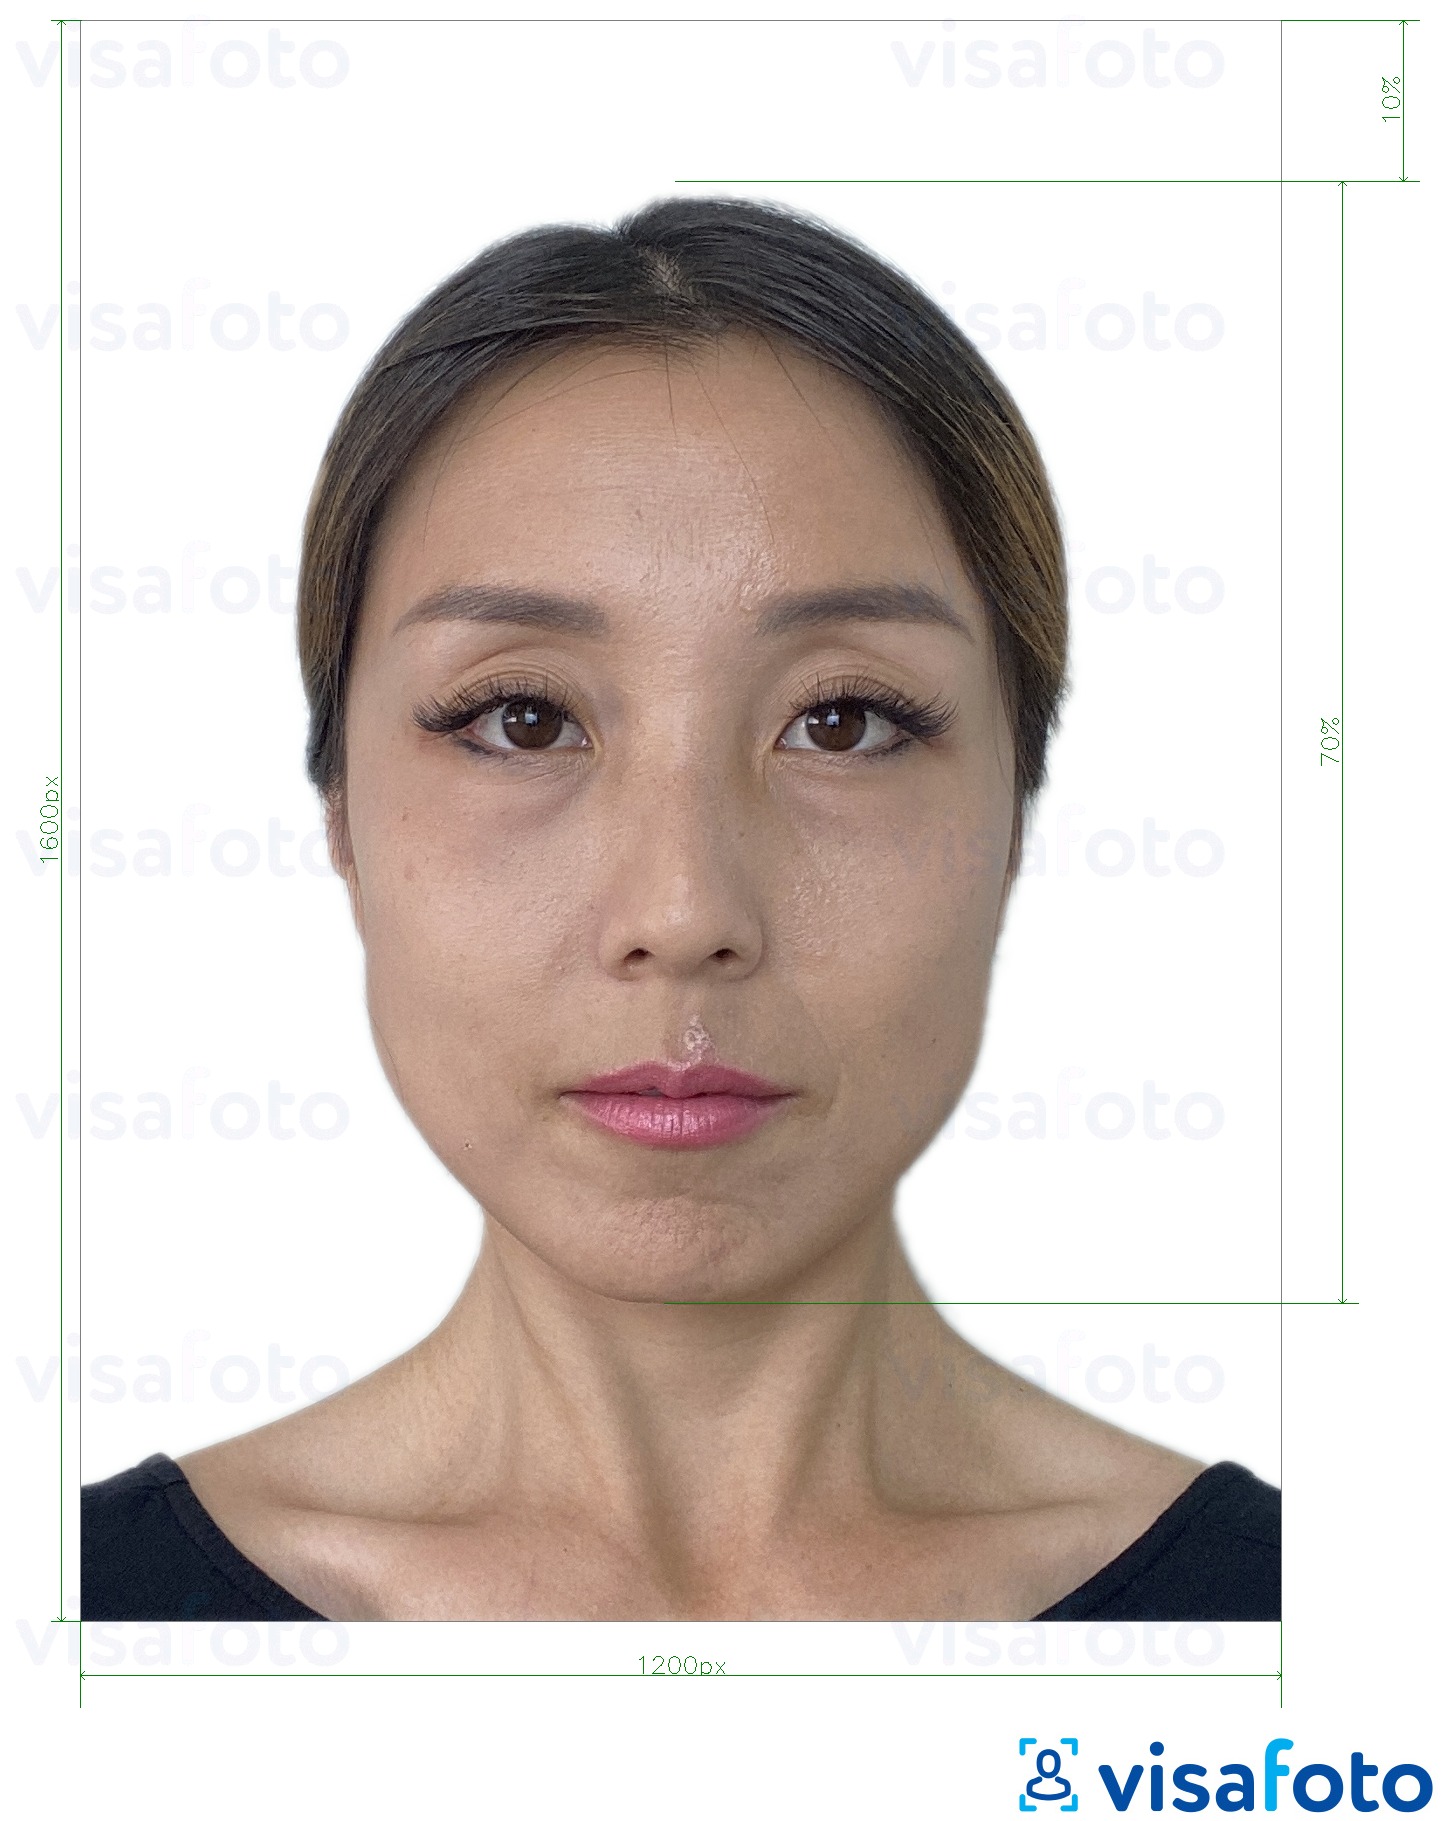 Příklad fotografie Hongkong online e-vízum 1200x1600 pixelů s přesnou specifikací velikosti